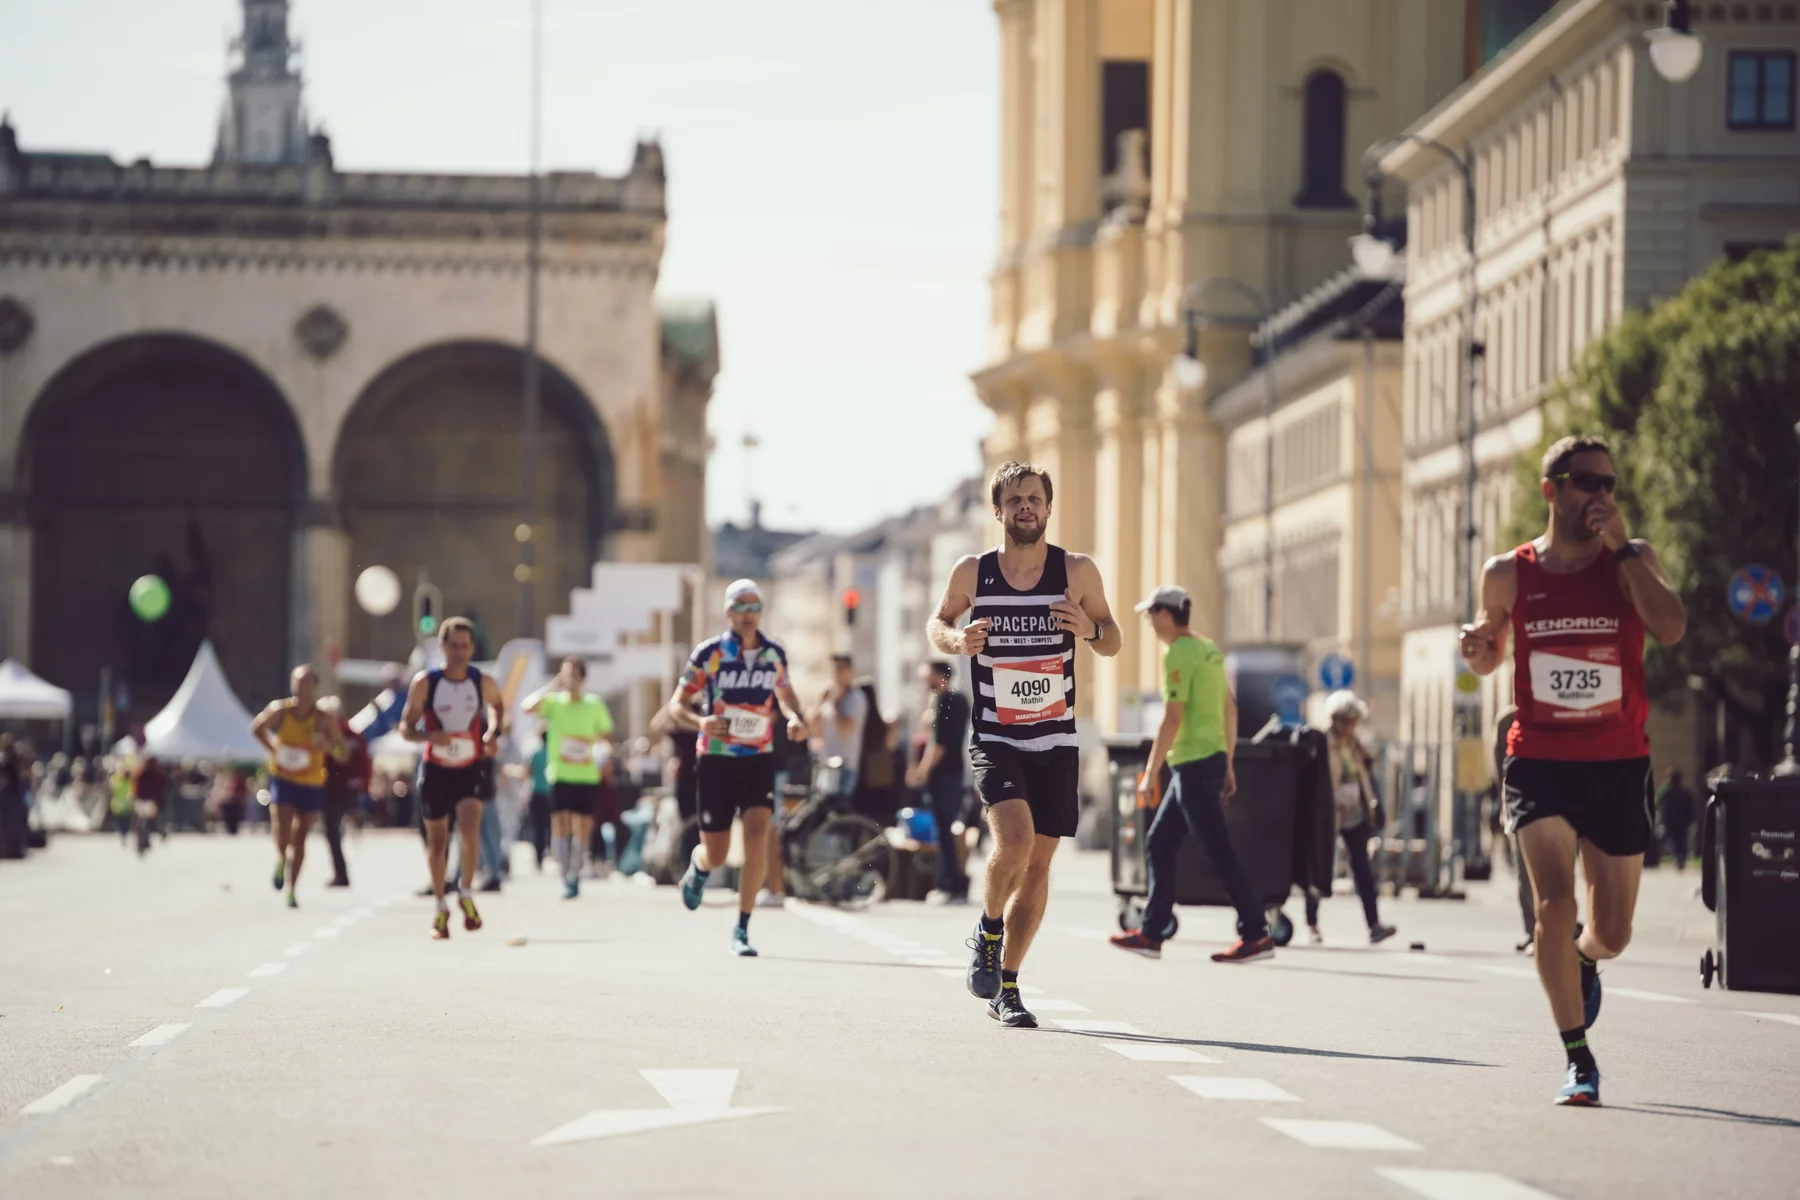 A runner in the Munich Marathon